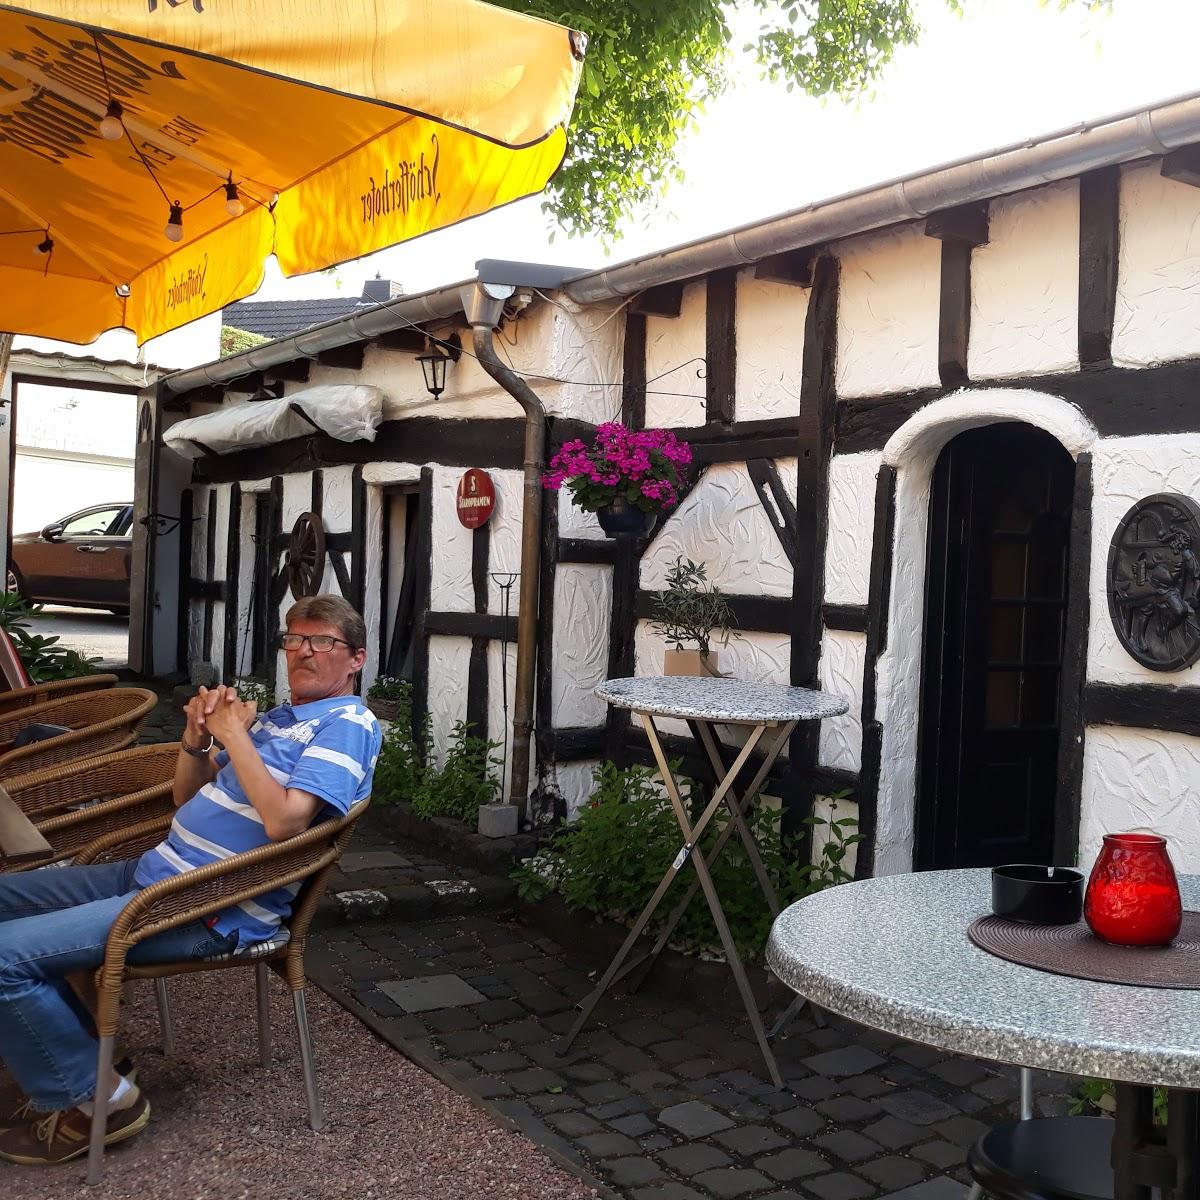 Restaurant "Friesenstuv" in Krefeld